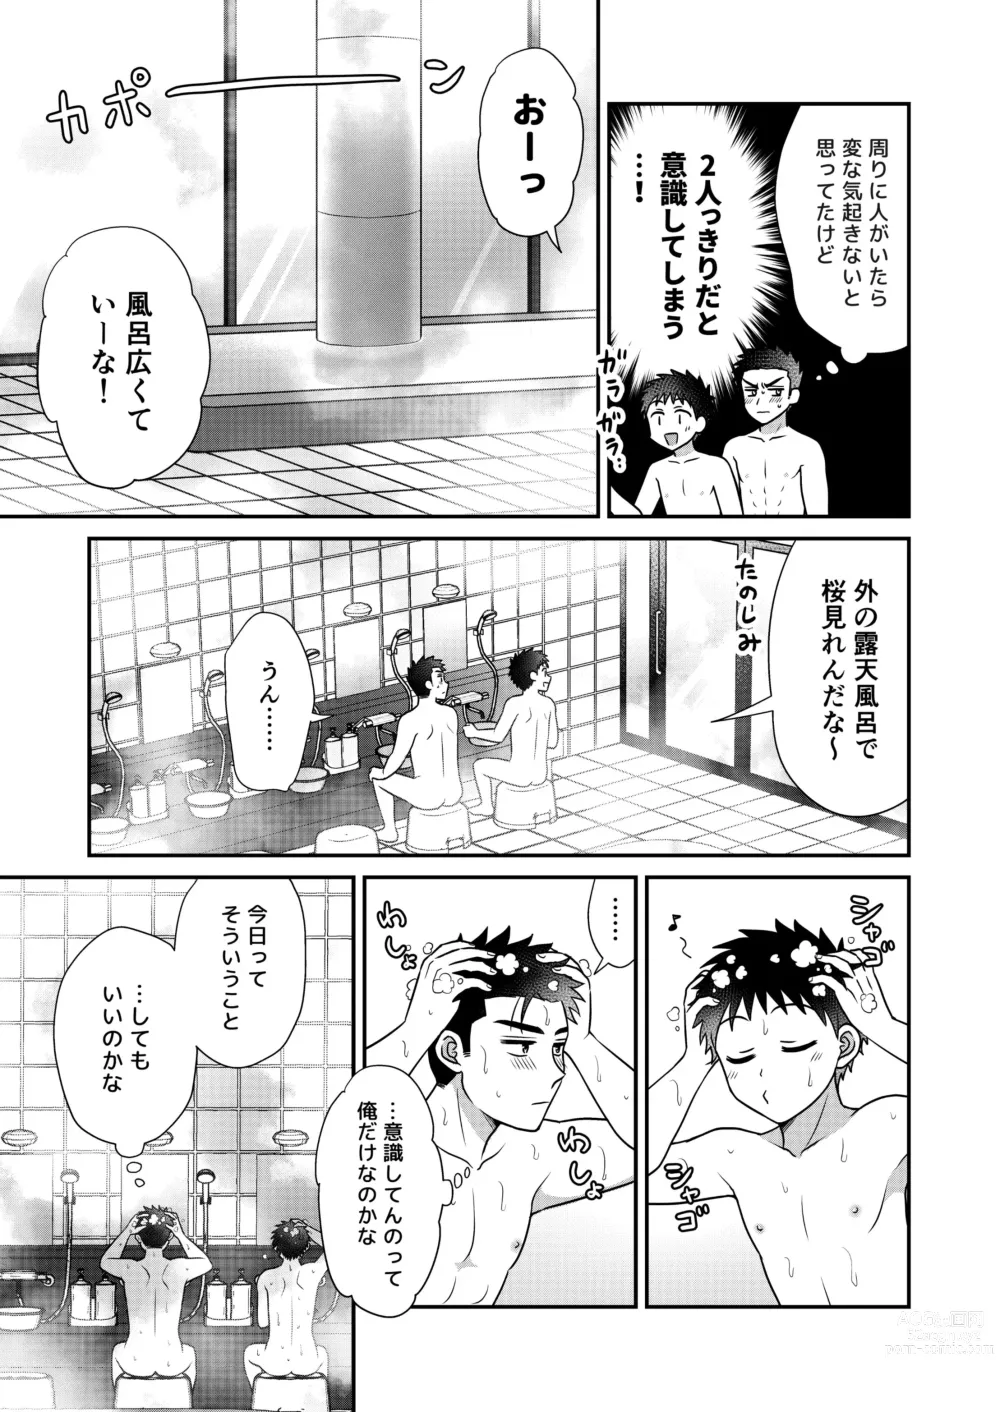 Page 23 of doujinshi Hayatochiri BL Sakura Mau Onsen Ryokou no Hanashi.